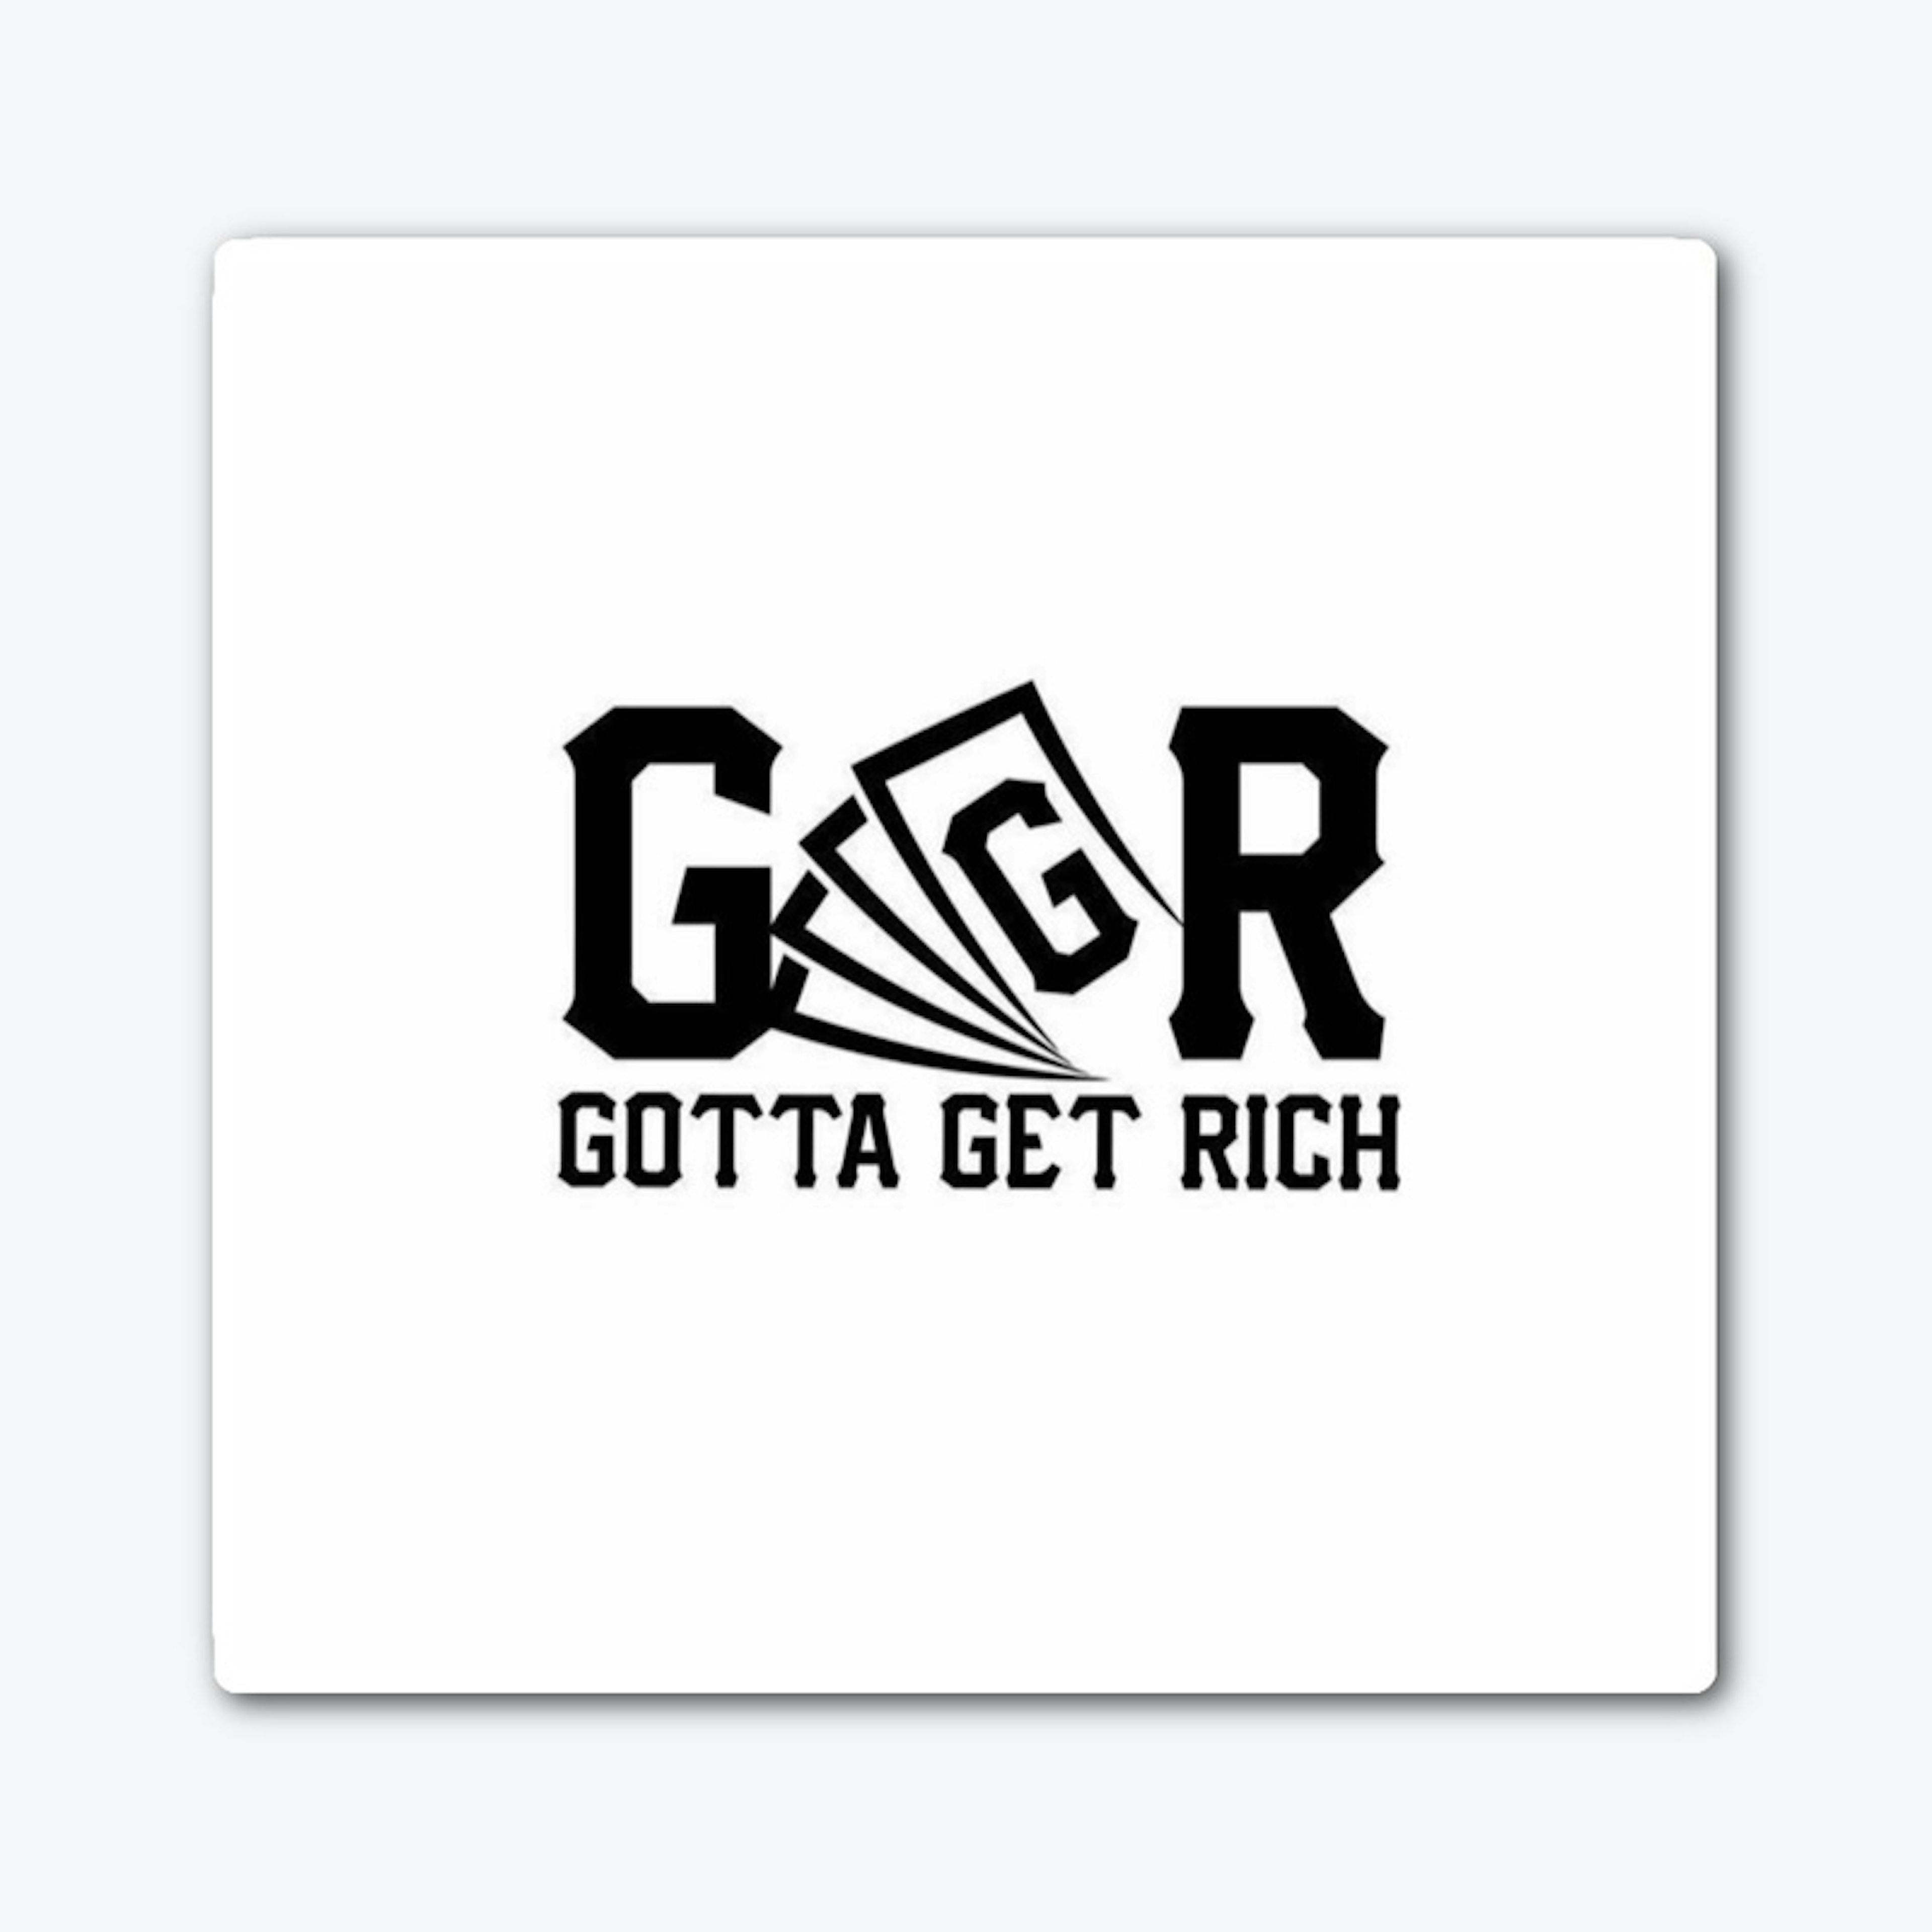 GGR "Gotta Get Rich"